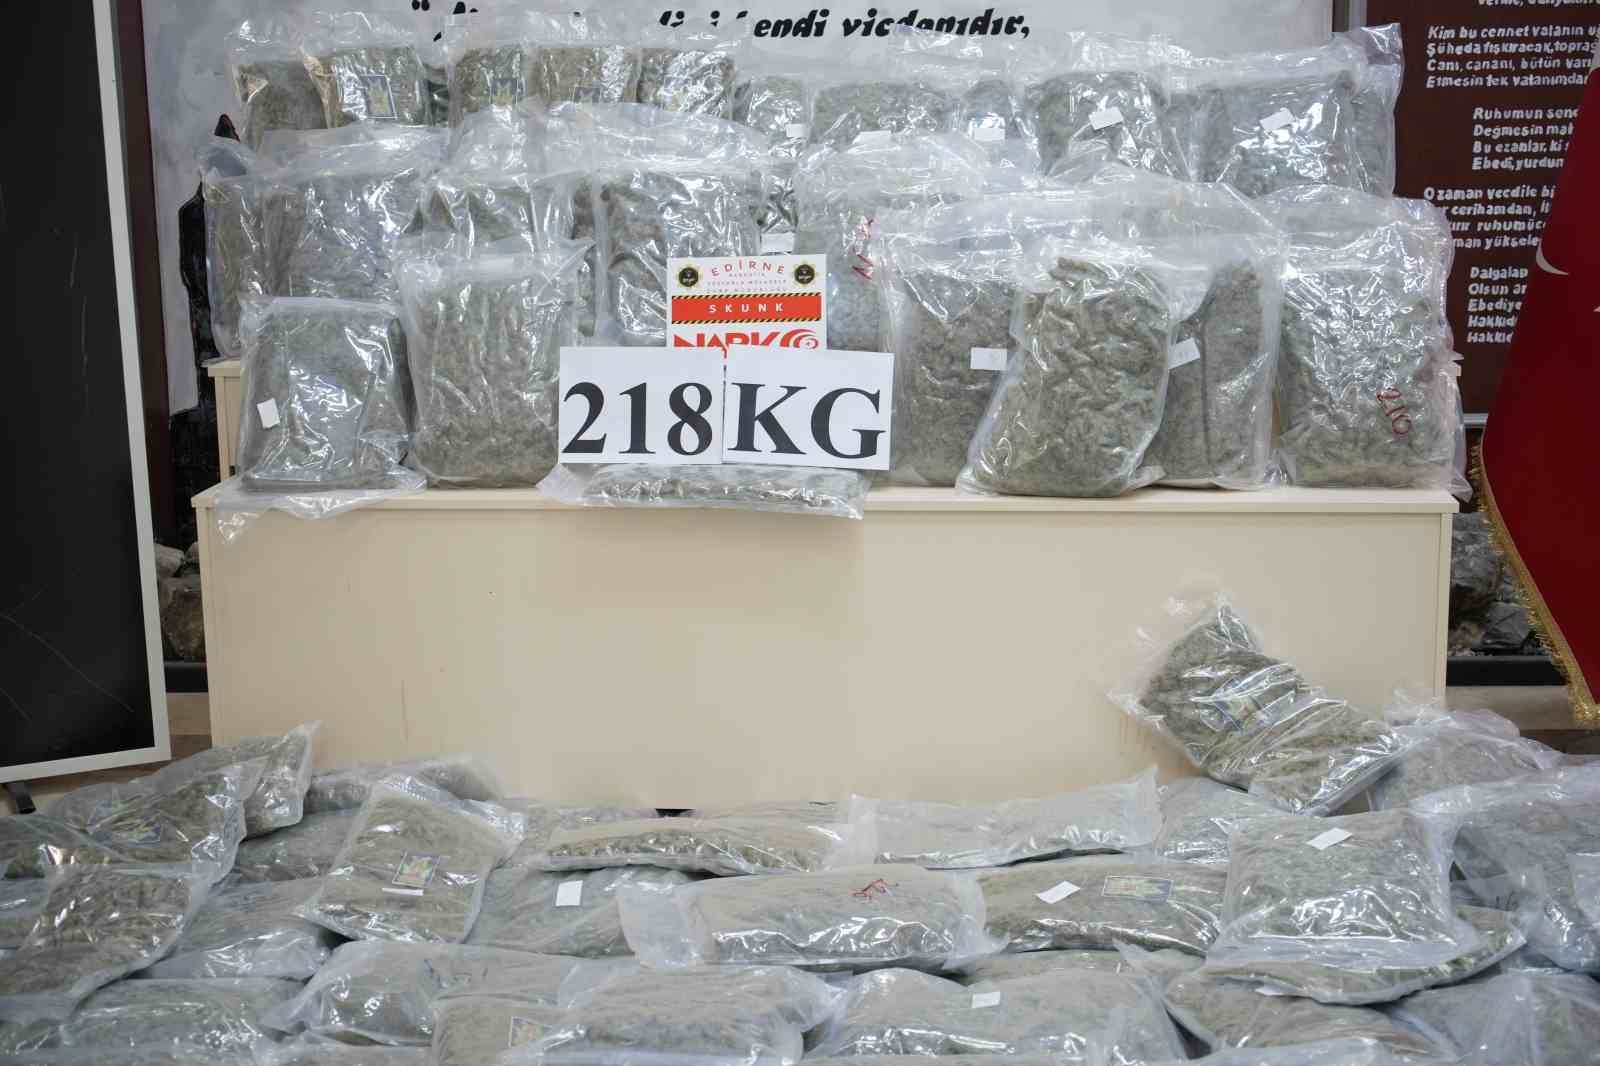 Türkiye’ye valizler dolusu uyuşturucu sokacaklardı: 218 kilogram skunk ele geçirildi
